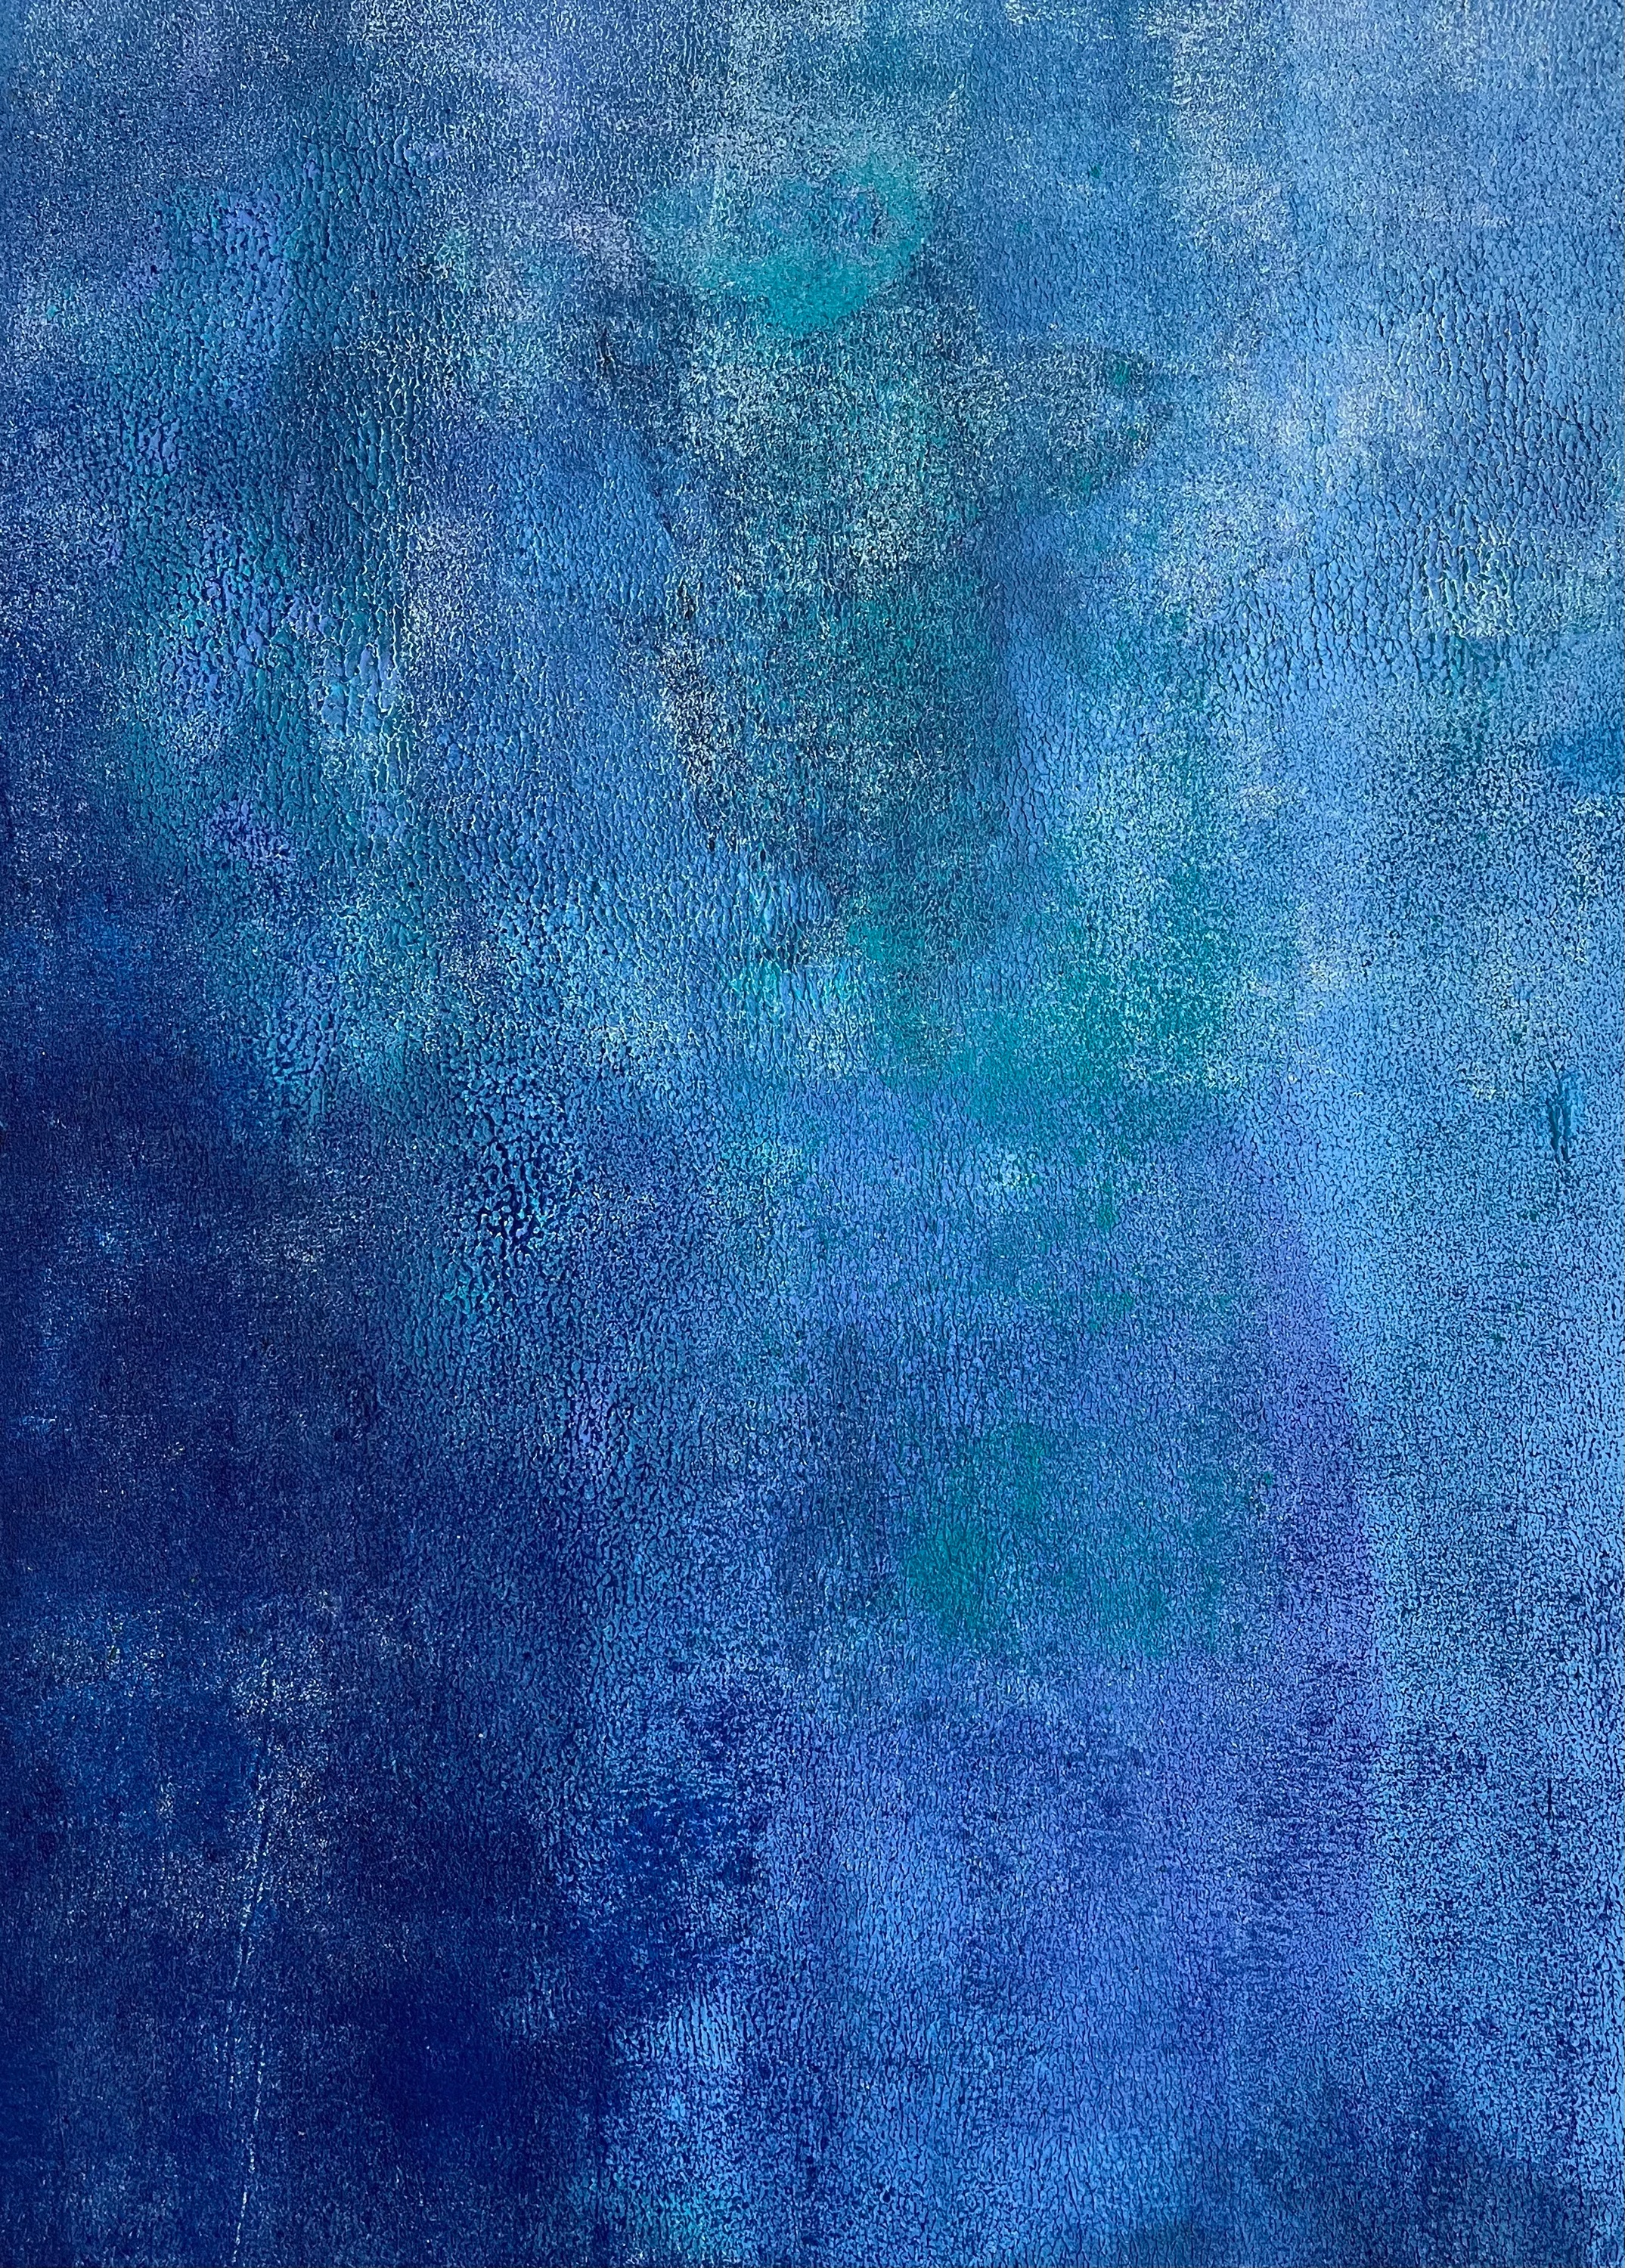 Blue 2  abstraction 9 21 12 x16  qtarpi